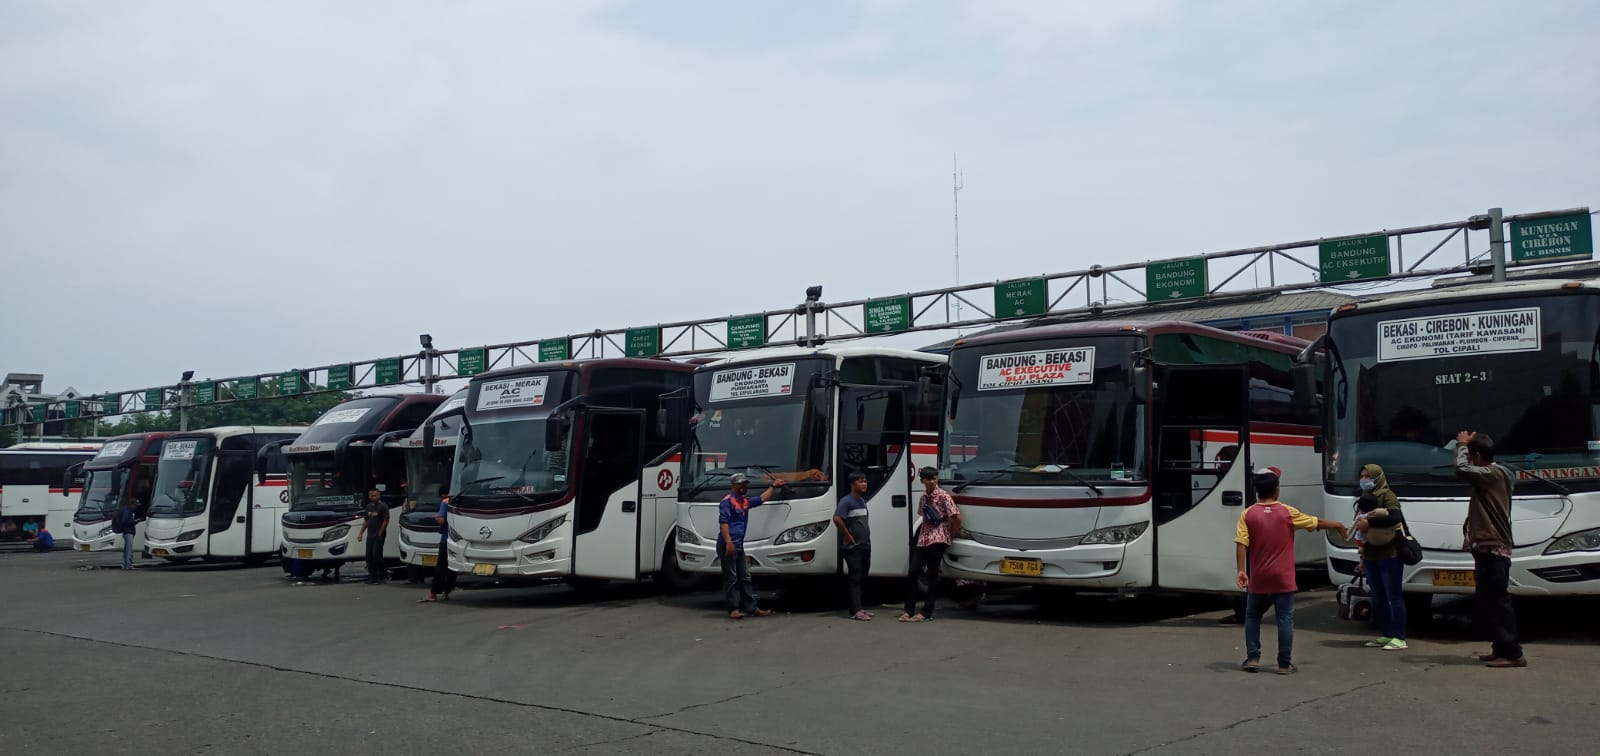 Daftar Harga Tiket Bus AKAP di Bekasi, Semua Rute Naik Drastis